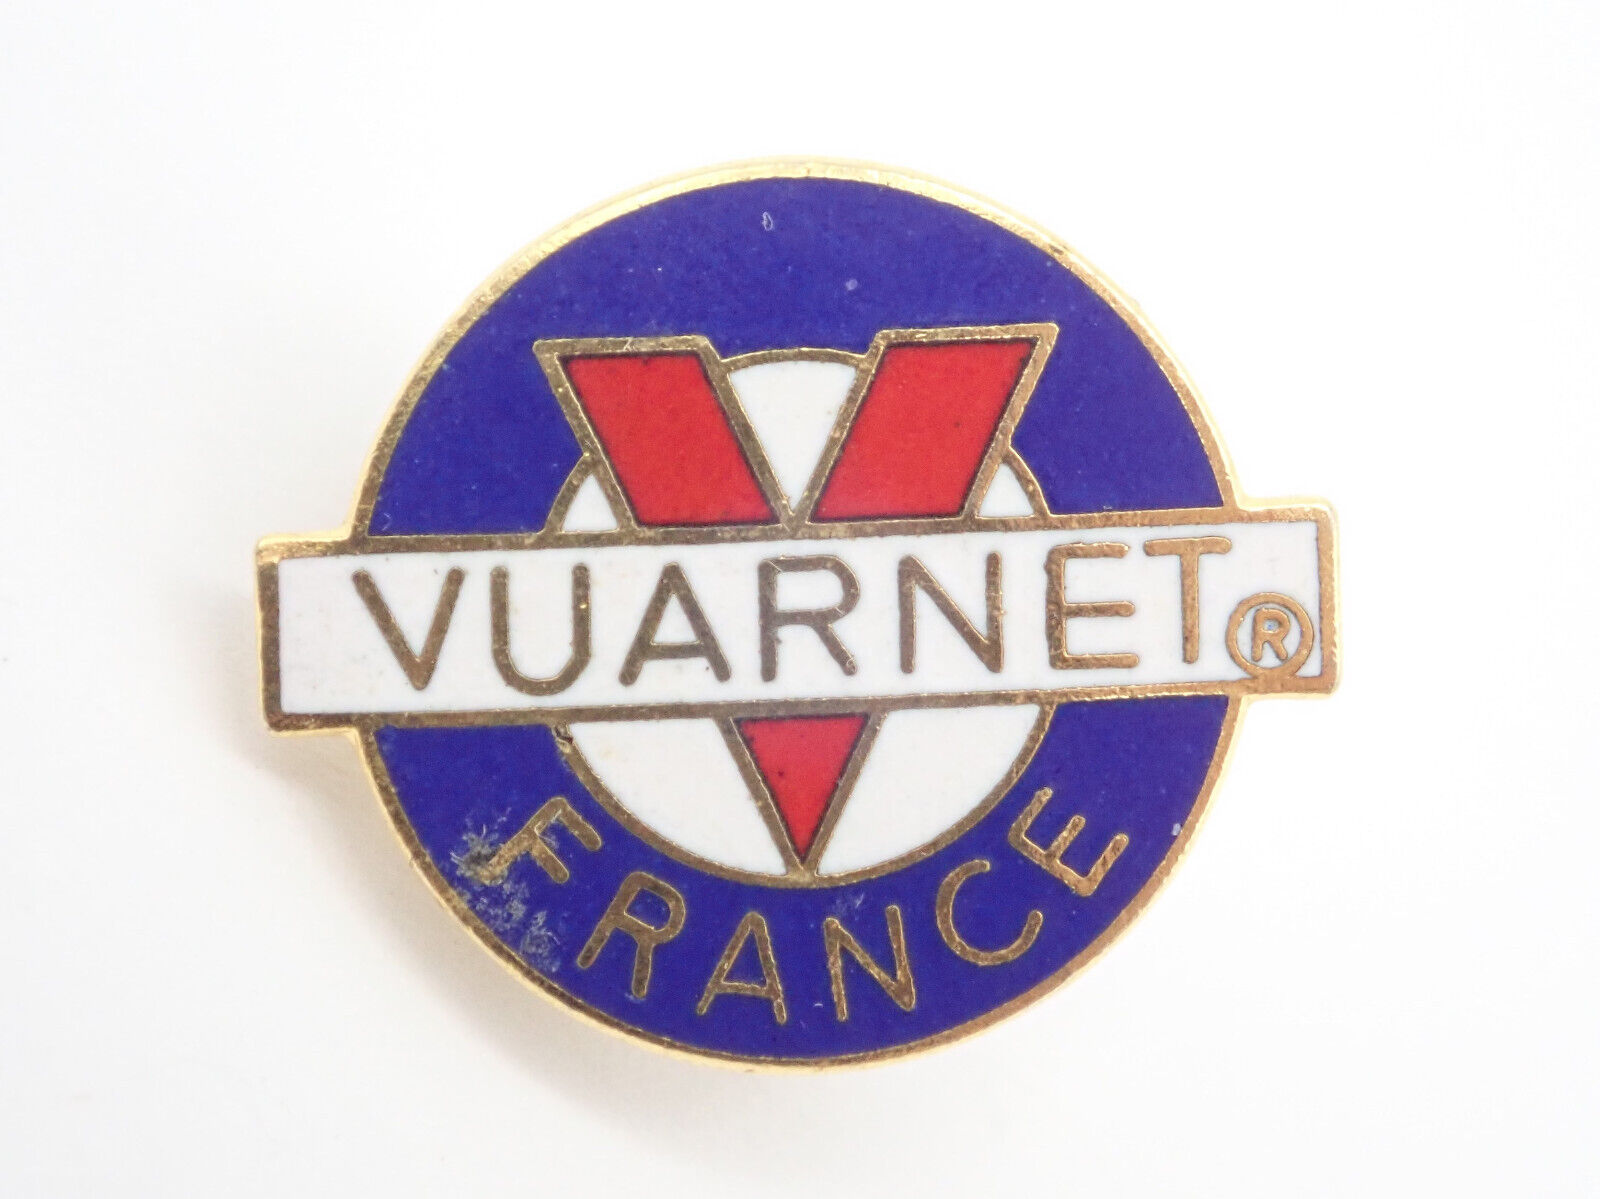 Vuarnet France Sunglasses logo Vintage Lapel Pin